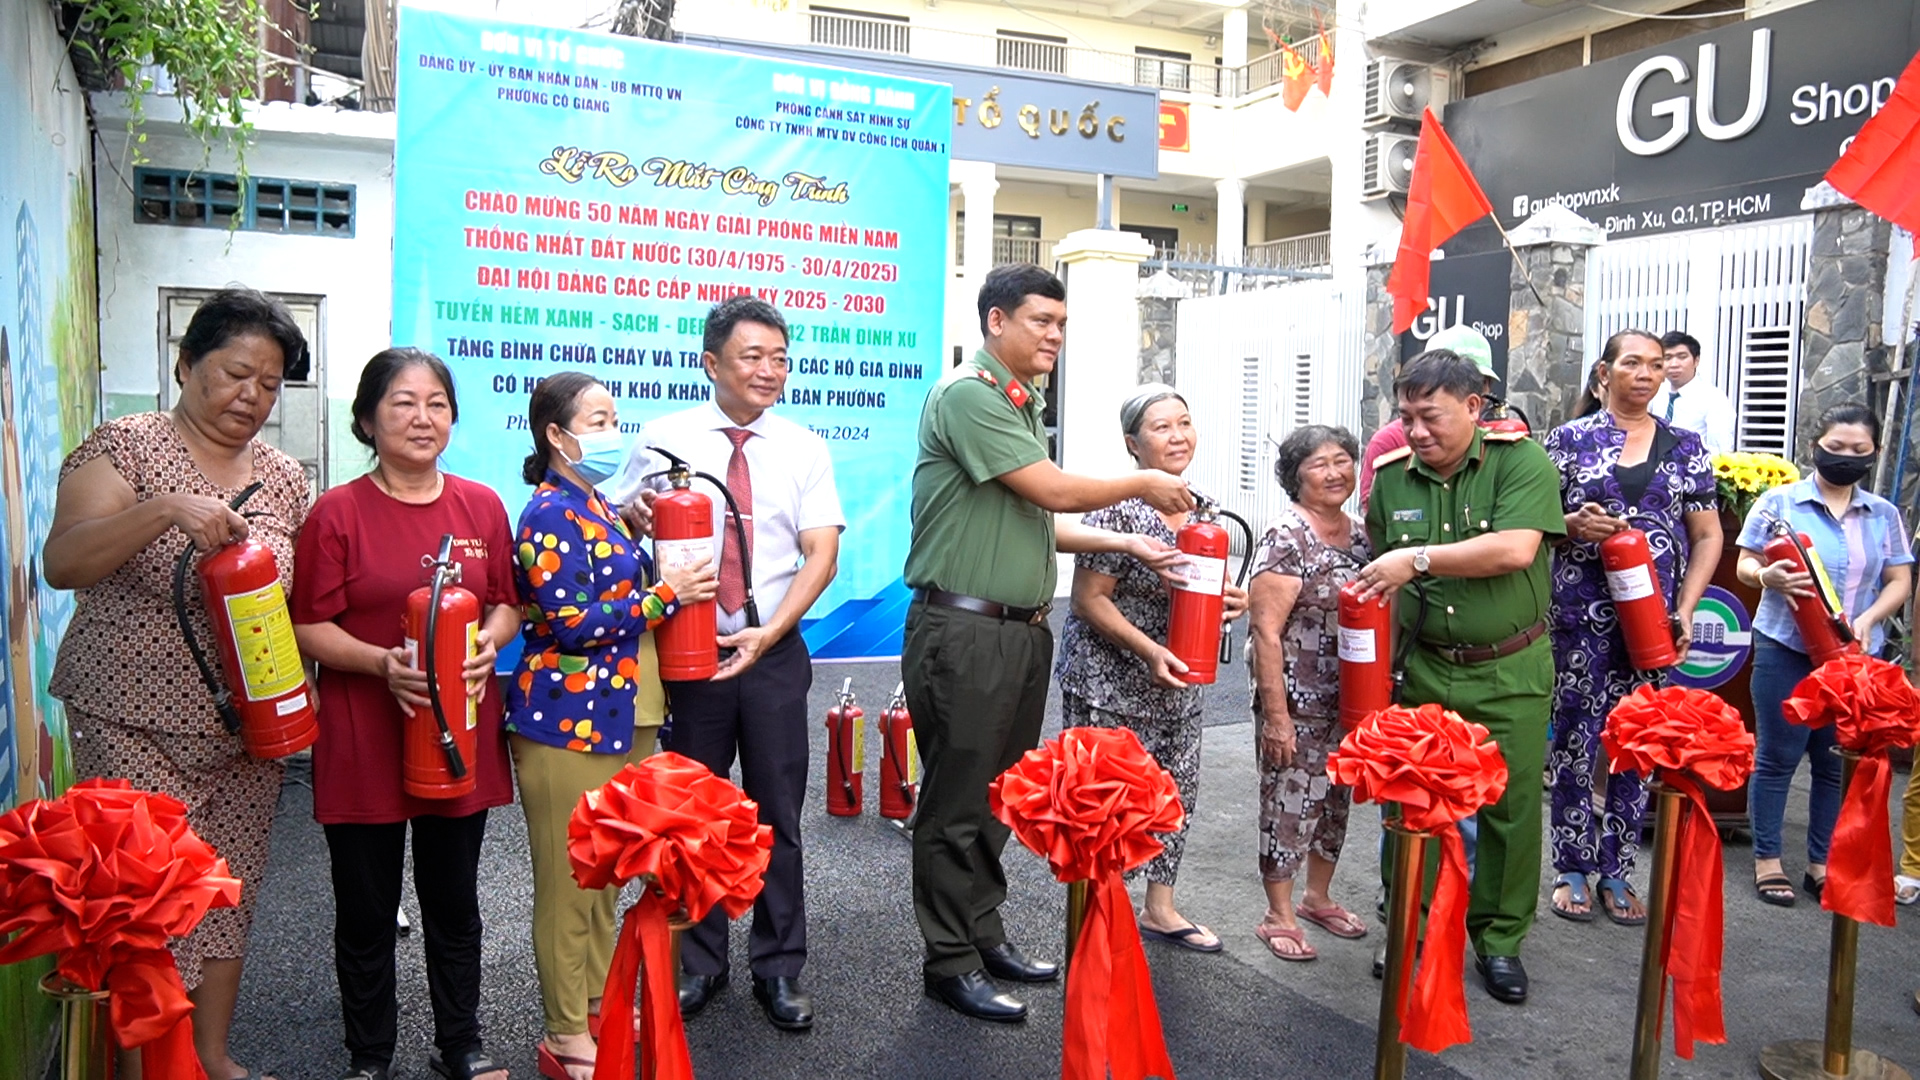 UBND Phường Cô Giang cũng đã trao tặng bình chữa cháy cho những hộ dân có điều kiện khó khăn trên địa bàn phường